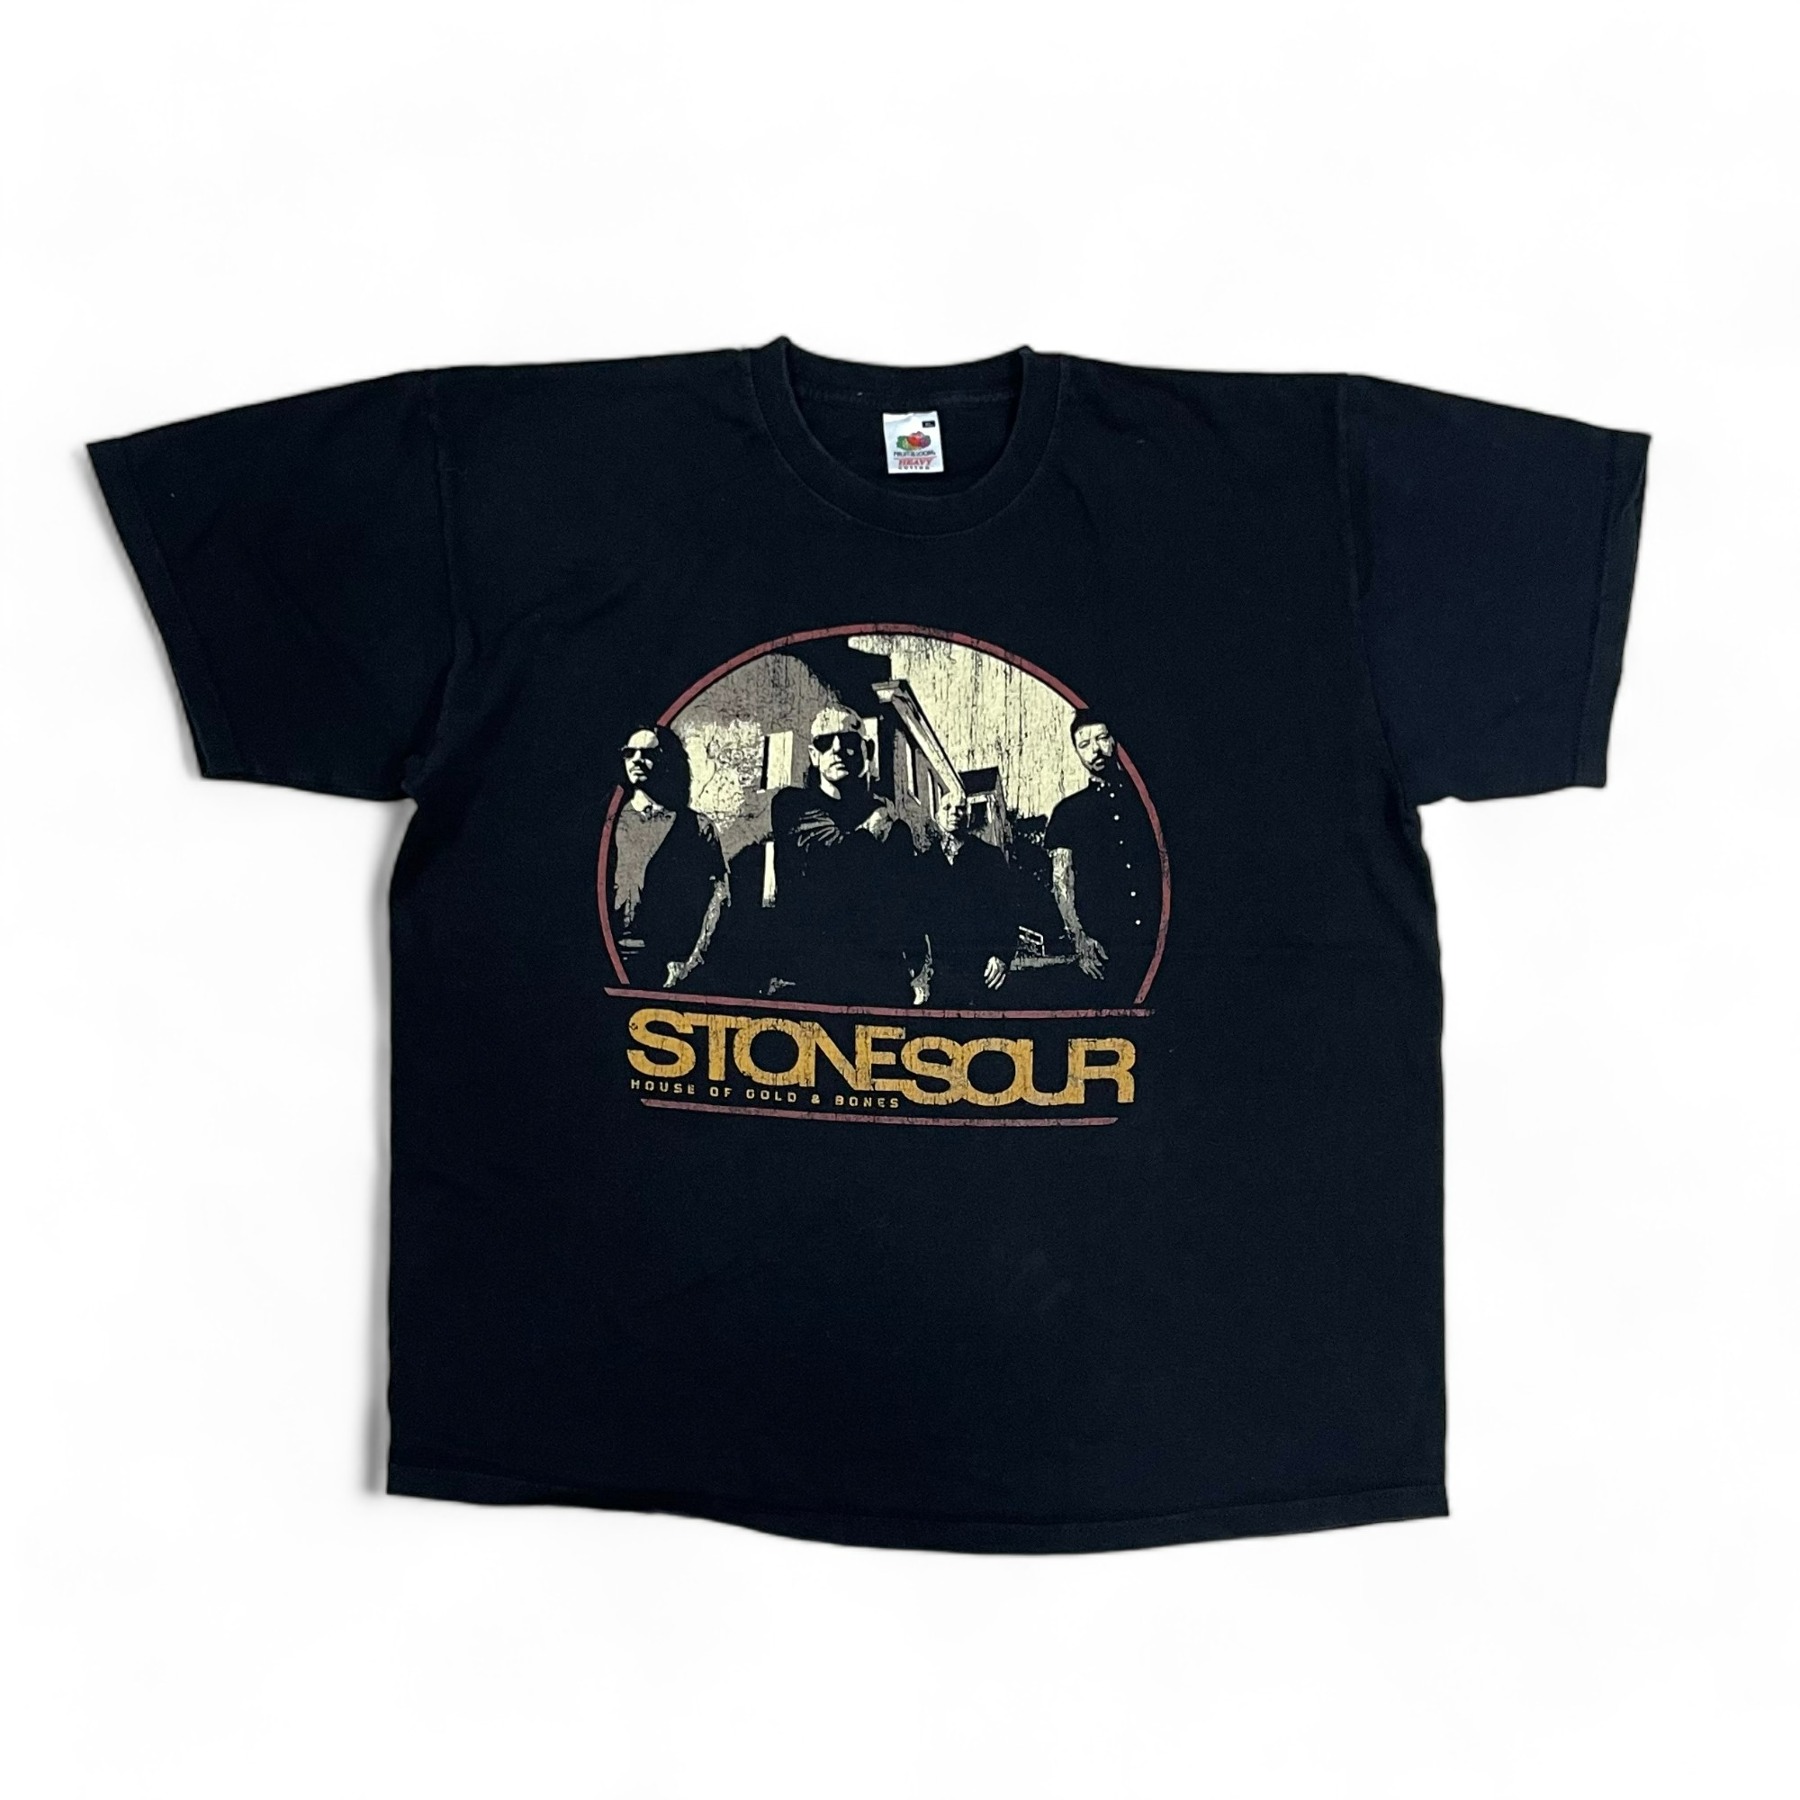 2013 Stone Sour Tour Tee - XL